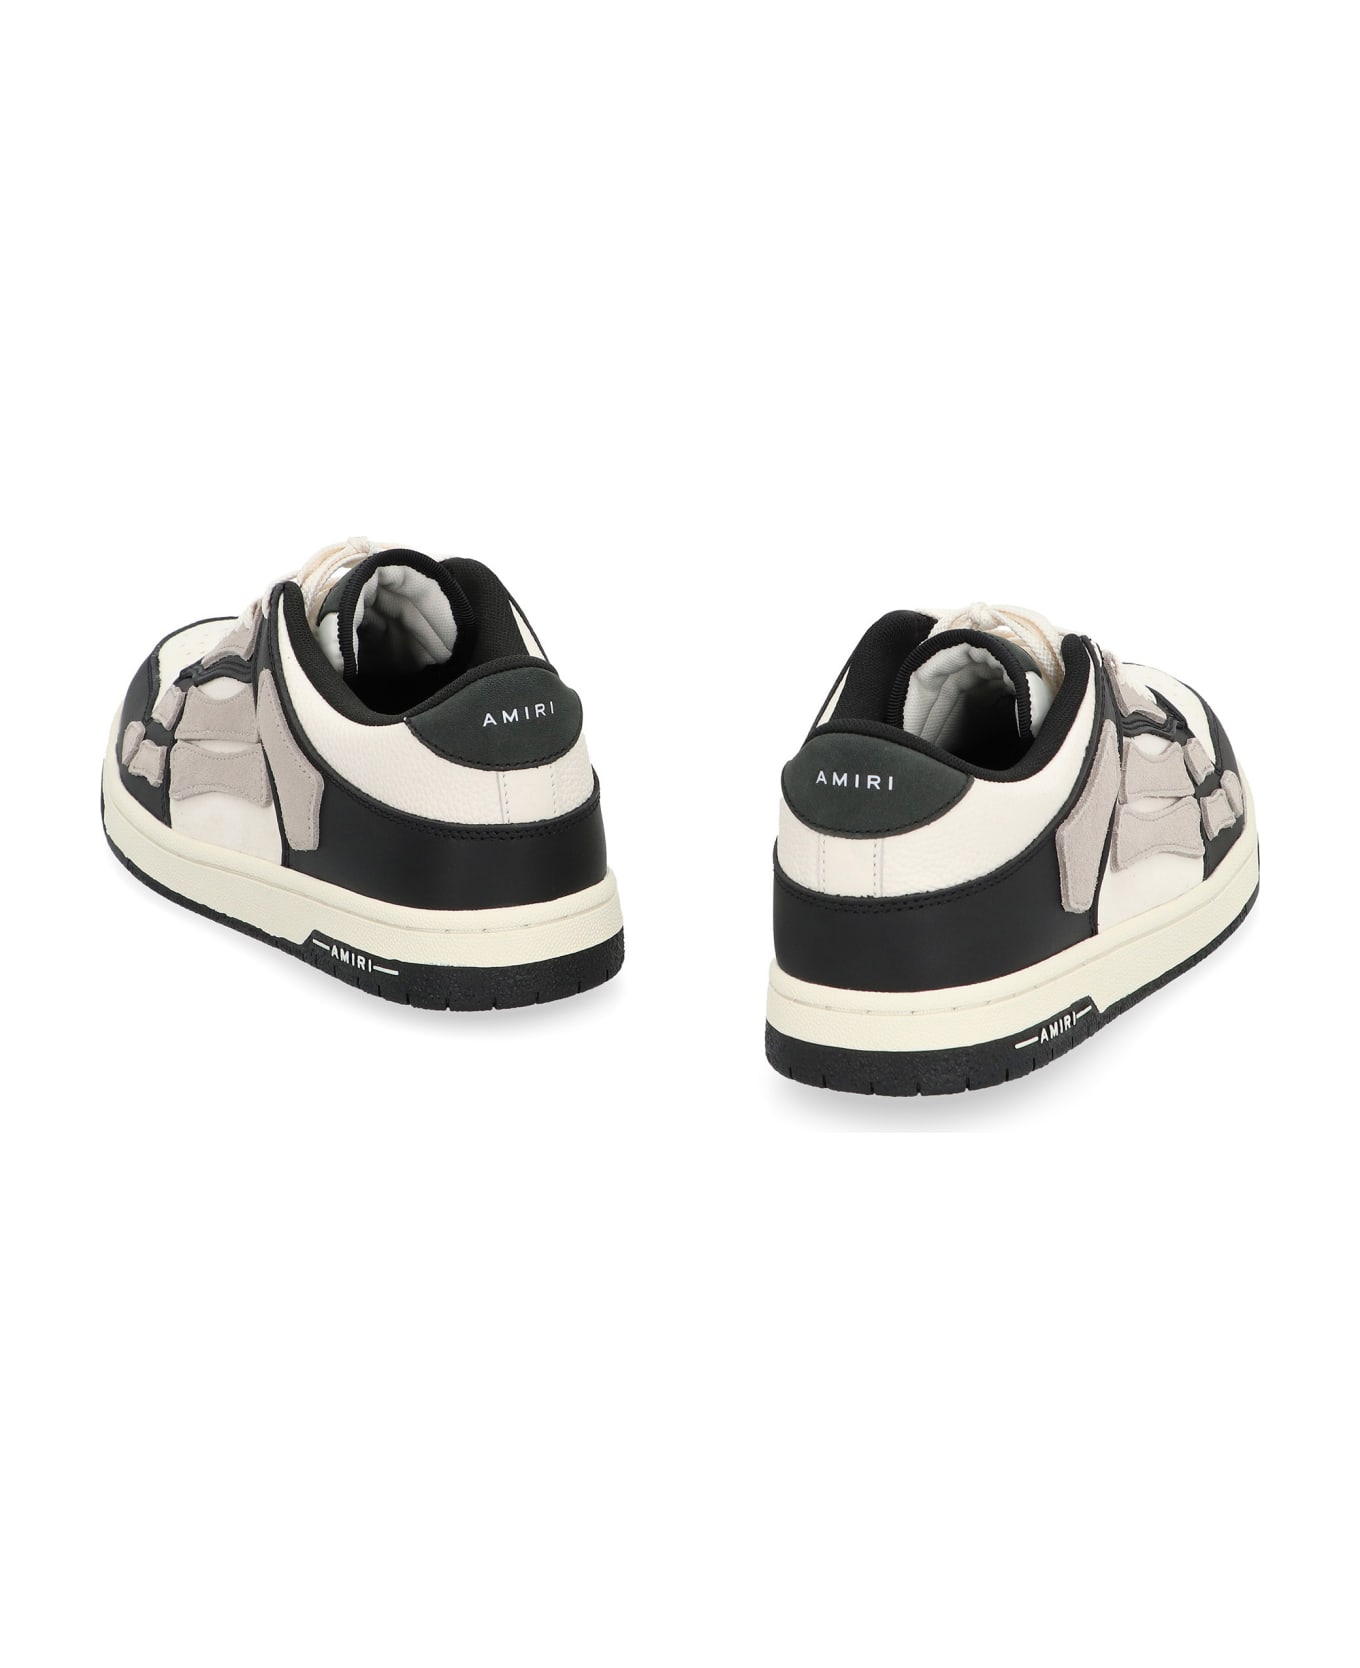 AMIRI Skel Top Low-top Sneakers - NEUTRALS/BLACK